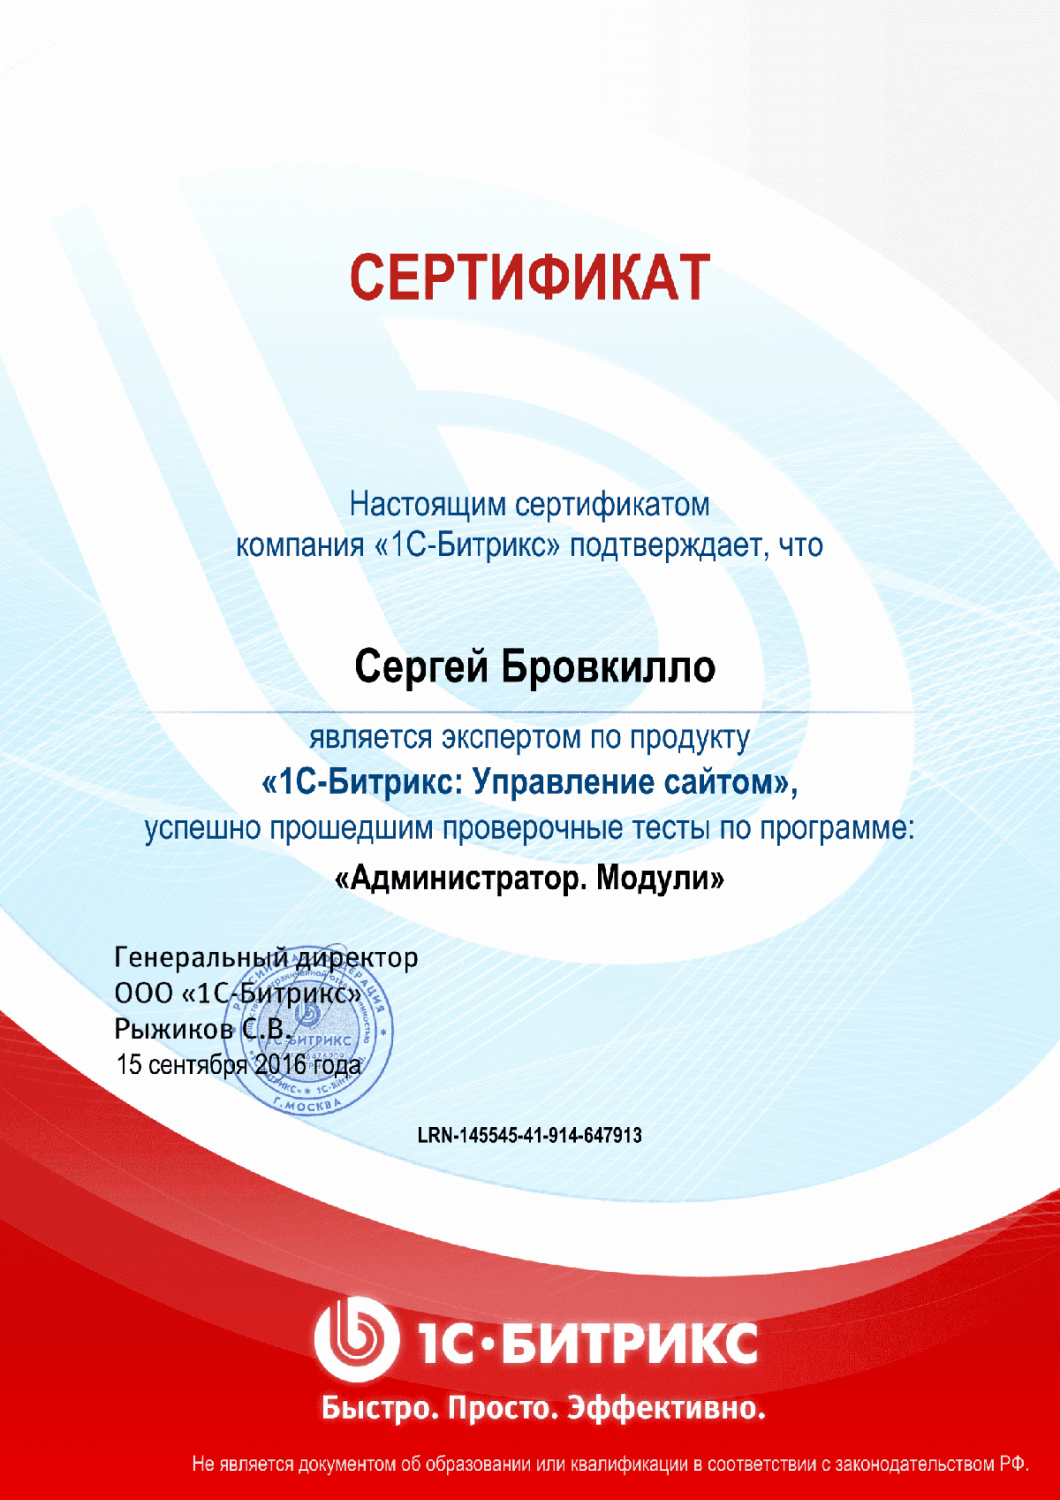 Сертификат эксперта по программе "Администратор. Модули" в Тольятти